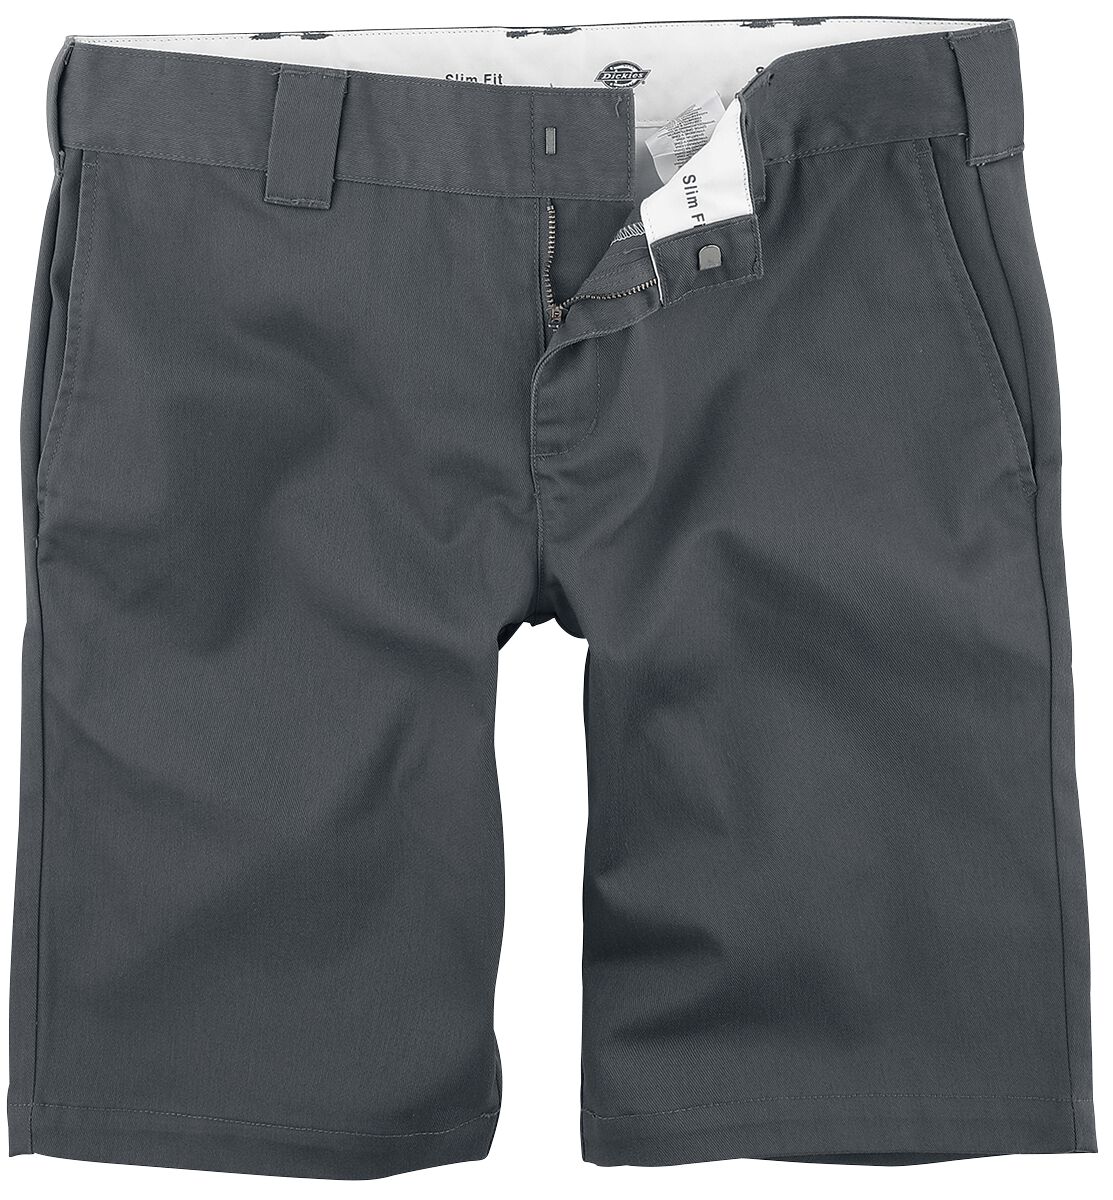 Dickies Short - Slim Fit Short - 30 bis 40 - für Männer - Größe 34 - charcoal